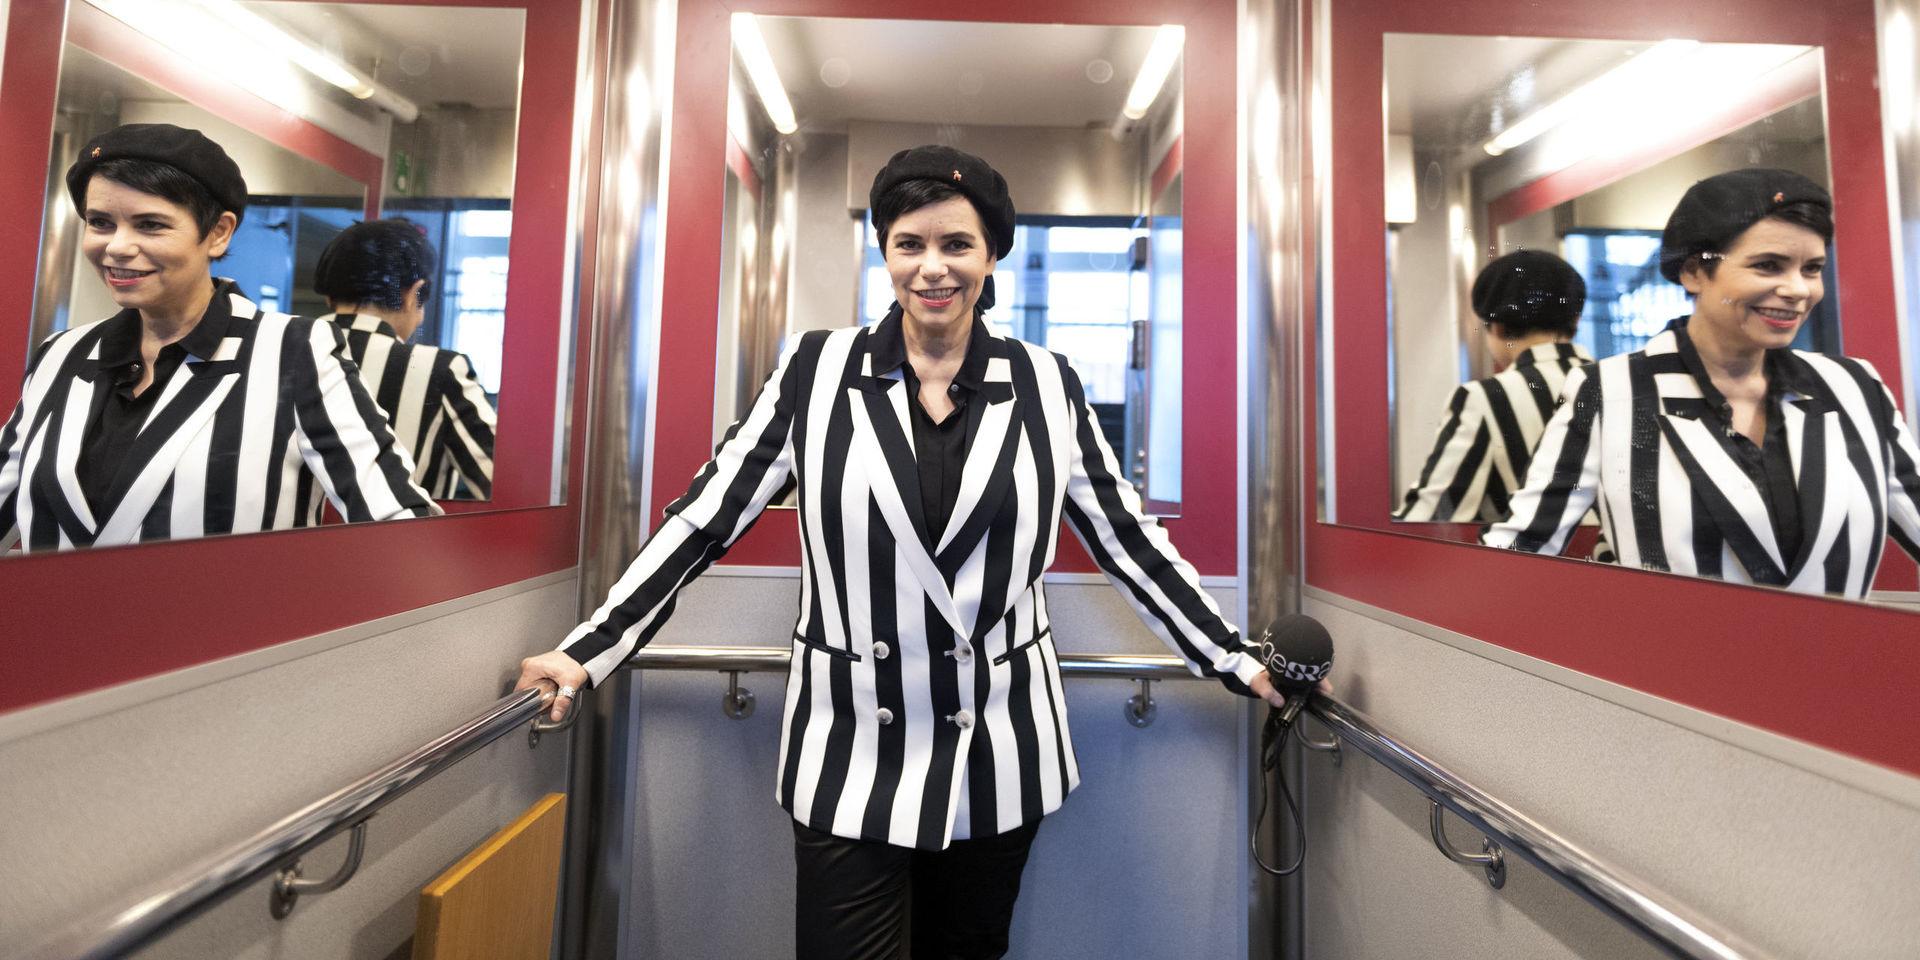 Programledaren Carolina Norén laddar inför att återigen kommentera Melodifestivalen i radio. Första deltävlingen avgörs på lördag i Linköping. Och dessförinnan hinner hon i veckan också med att fylla 55 år.